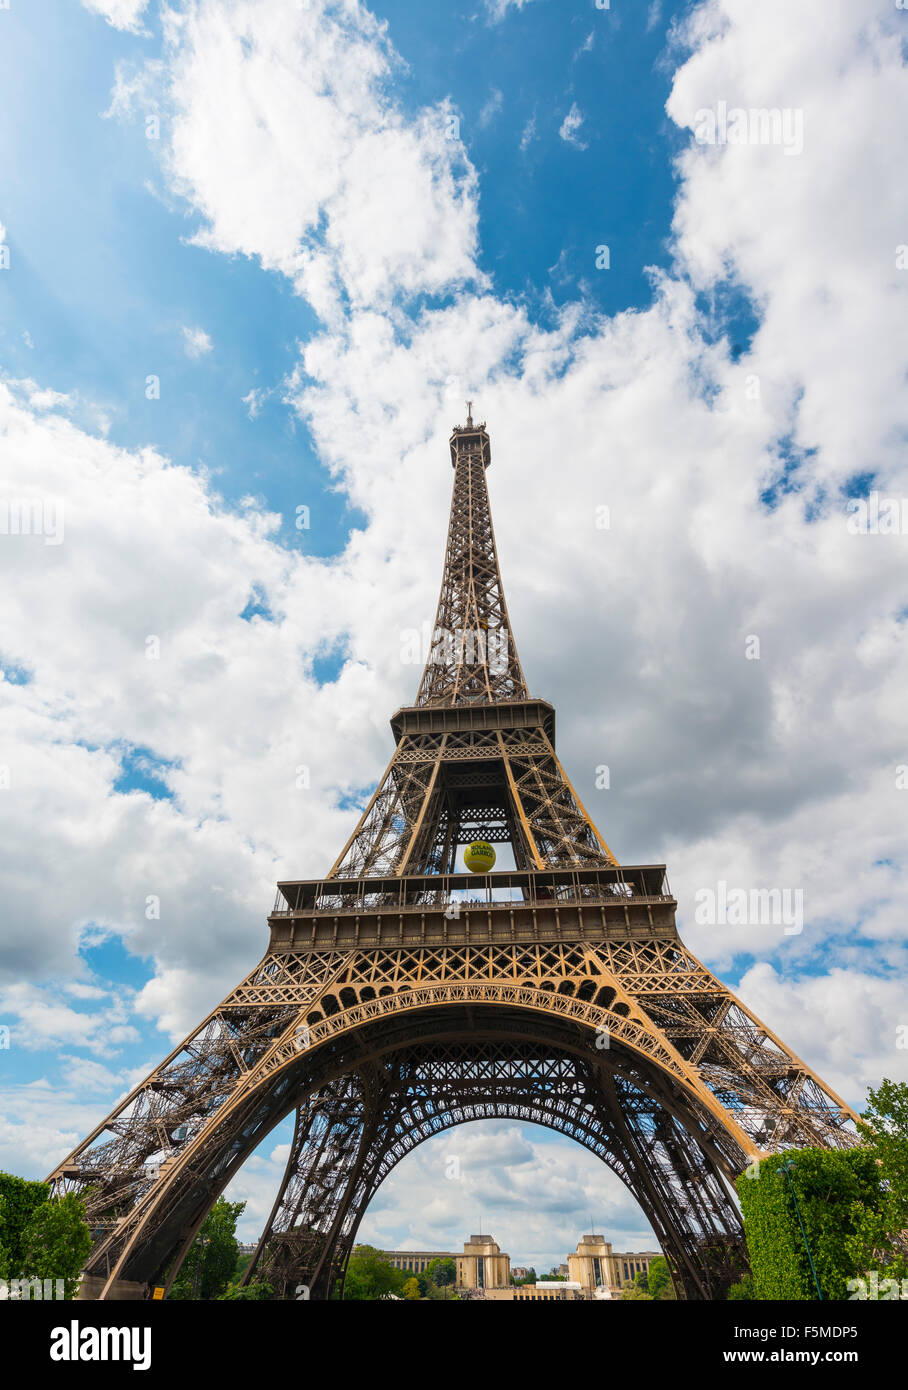 La Tour Eiffel, tour Eiffel, Champs de Mars, Paris, Ile-de-France, France Banque D'Images